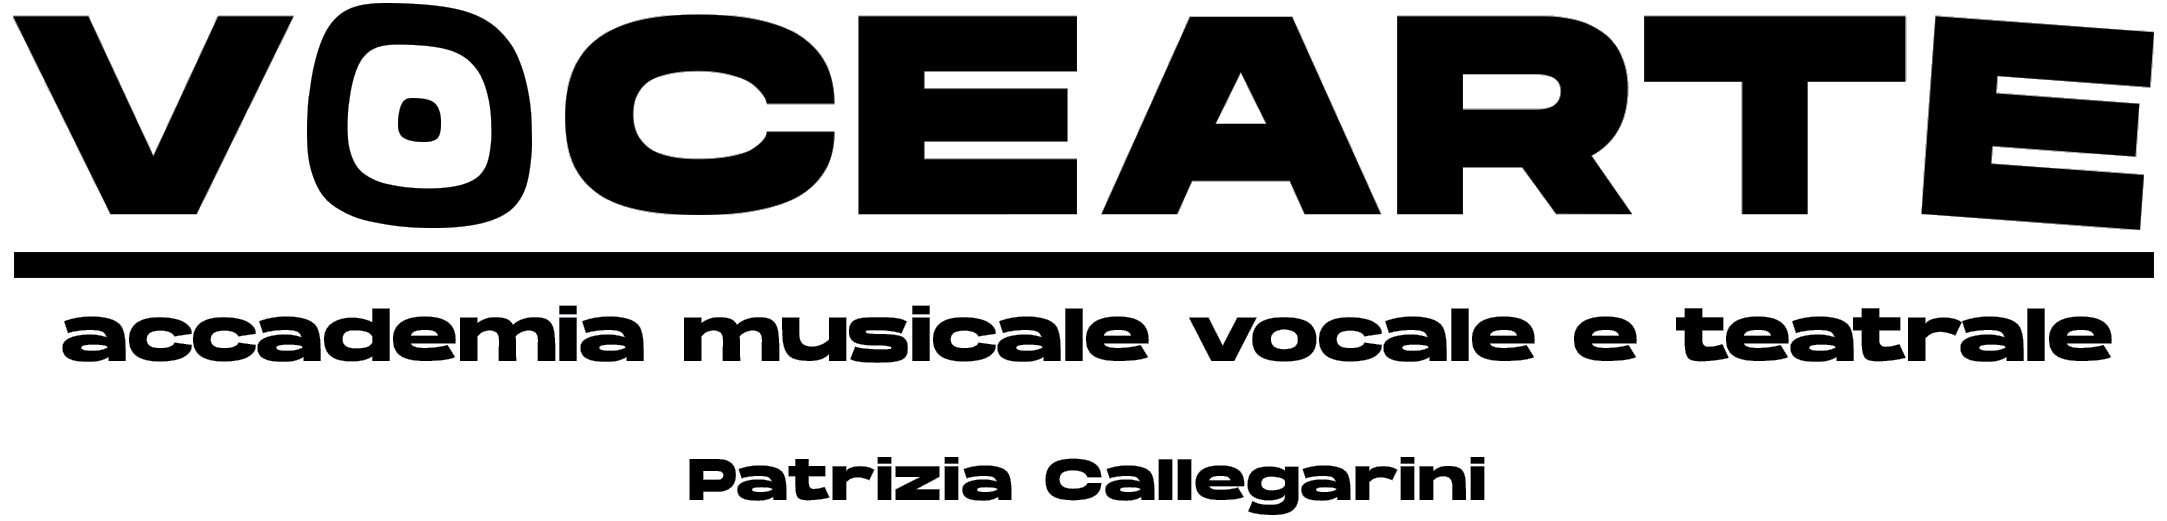 Logo dell'accademia